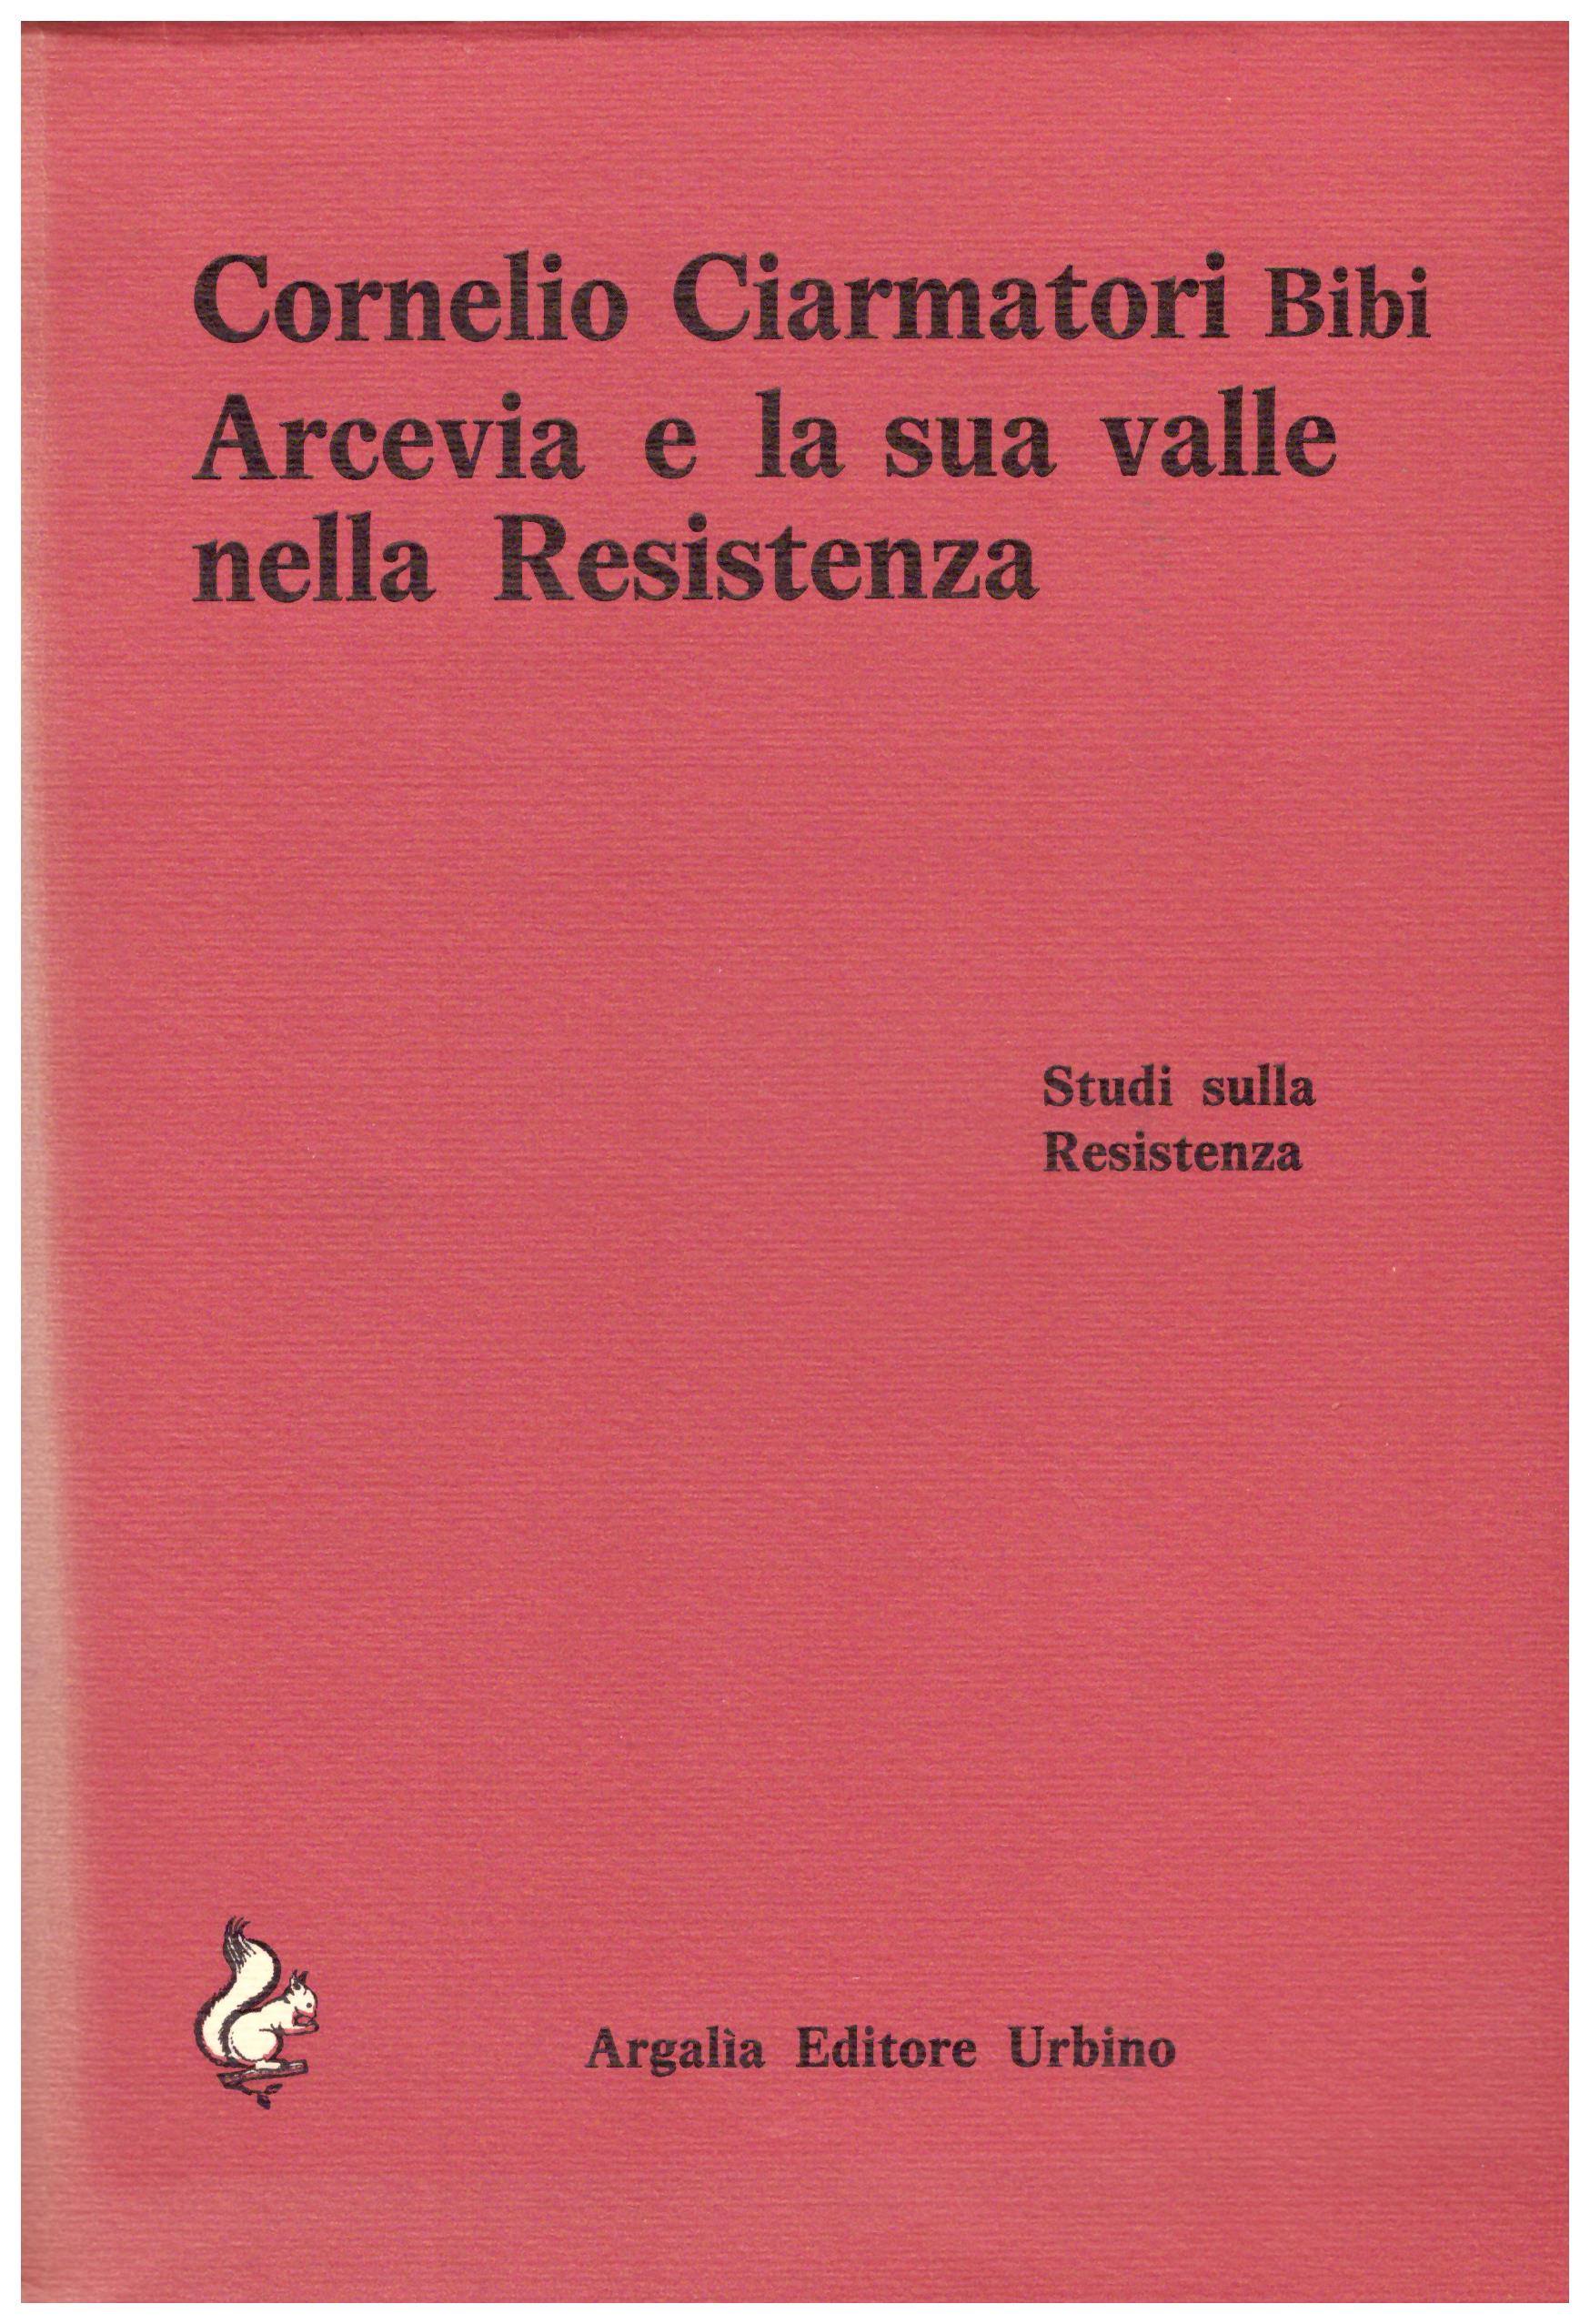 Arcevia e la sua valle nella resistenza. Cornelio Ciarmatori.